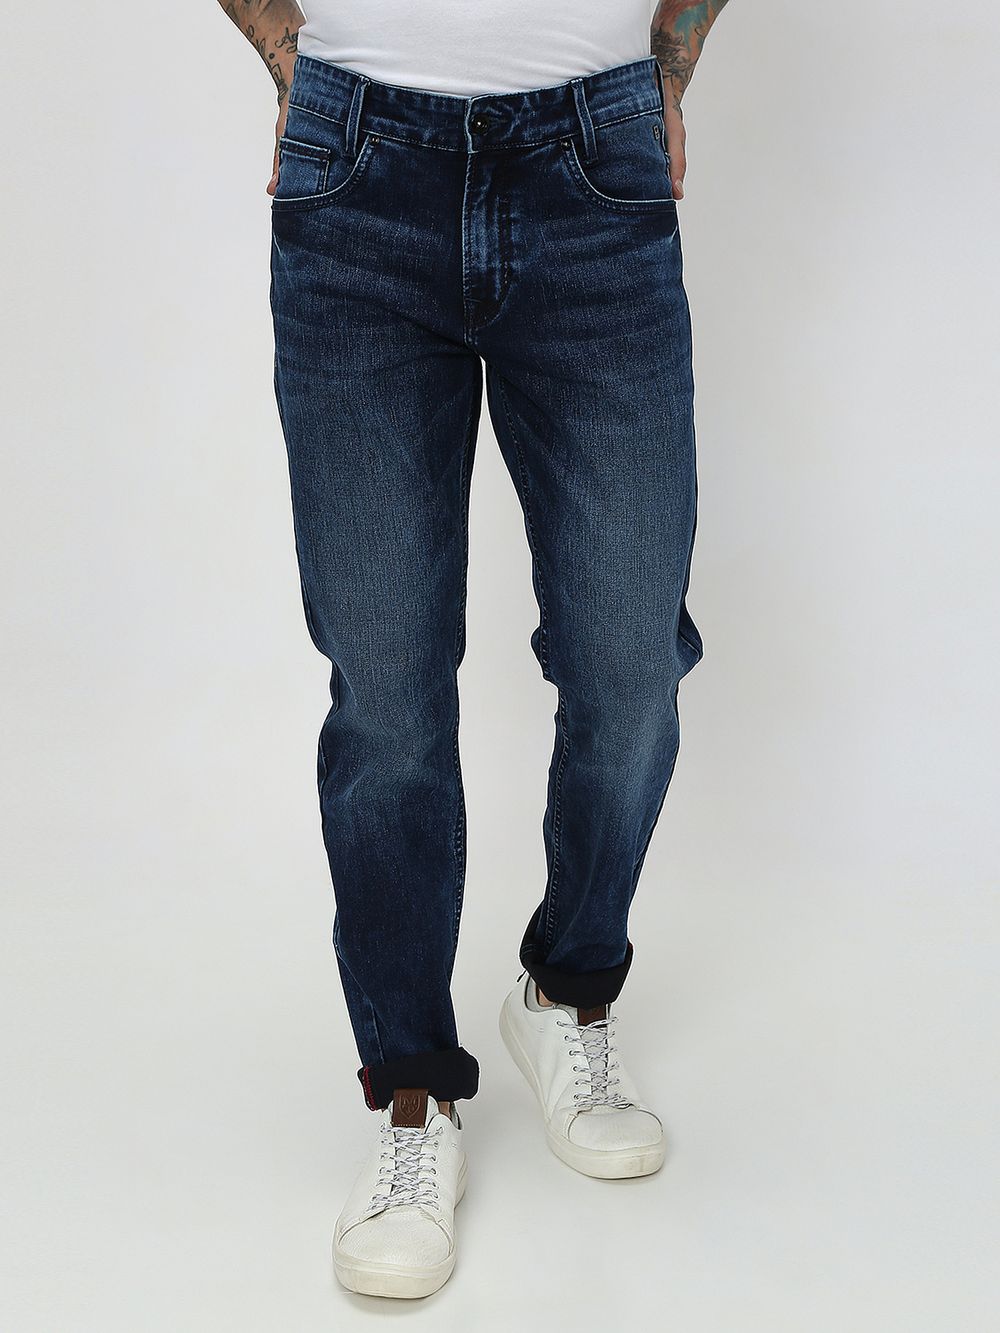 Indigo Blue Narrow Fit Originals Stretch Jeans